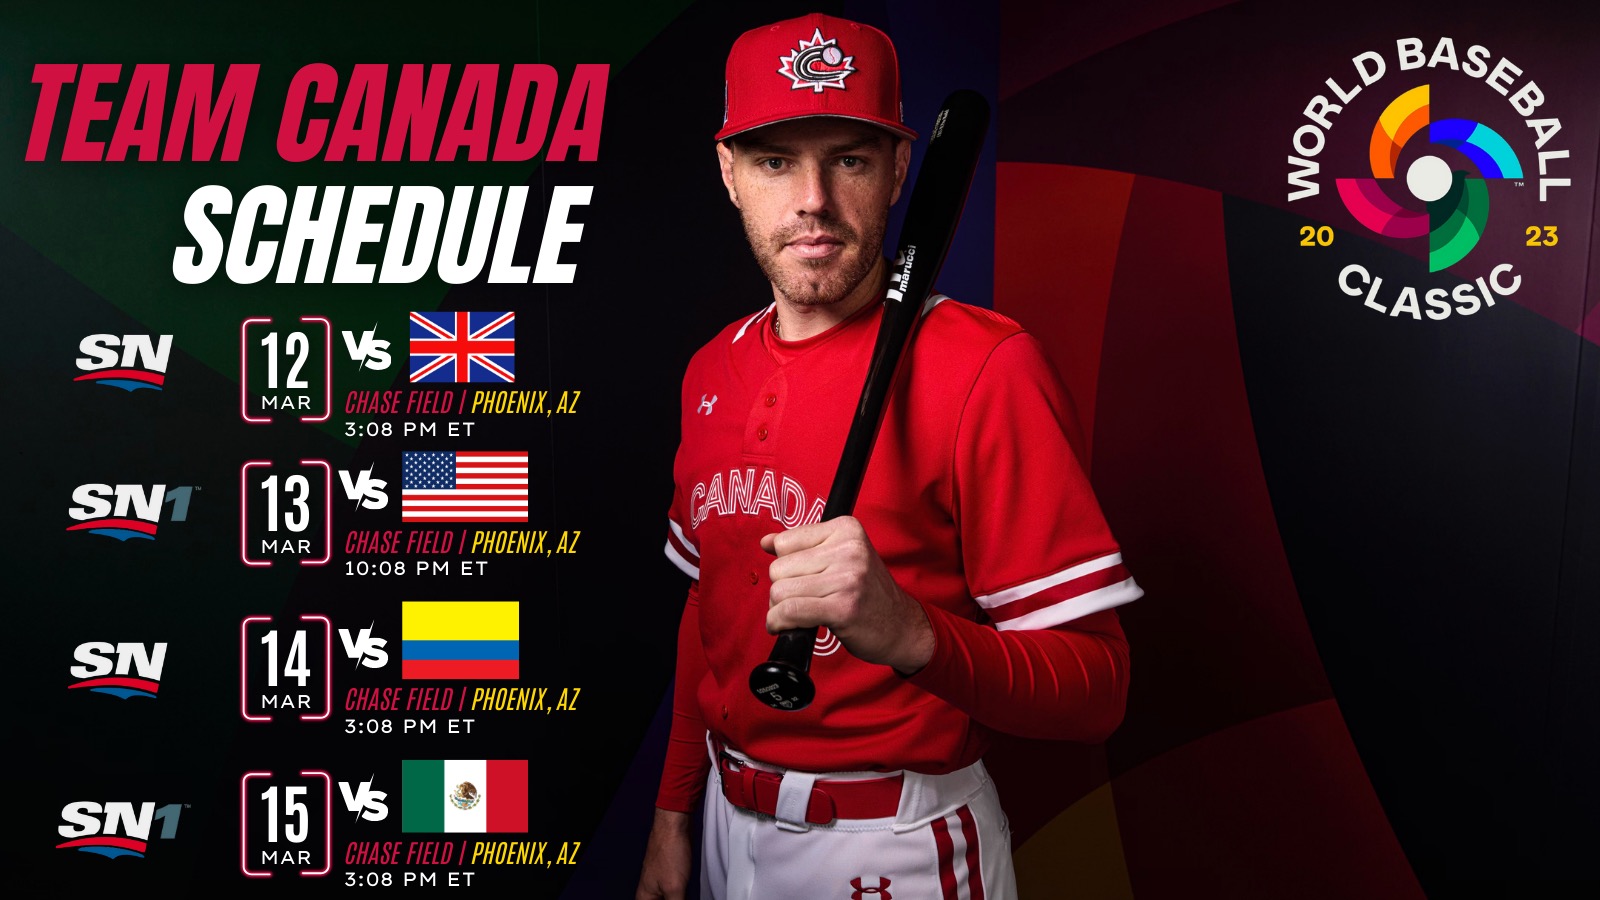 Voyez l'équipe canadienne à la Classique mondiale de baseball